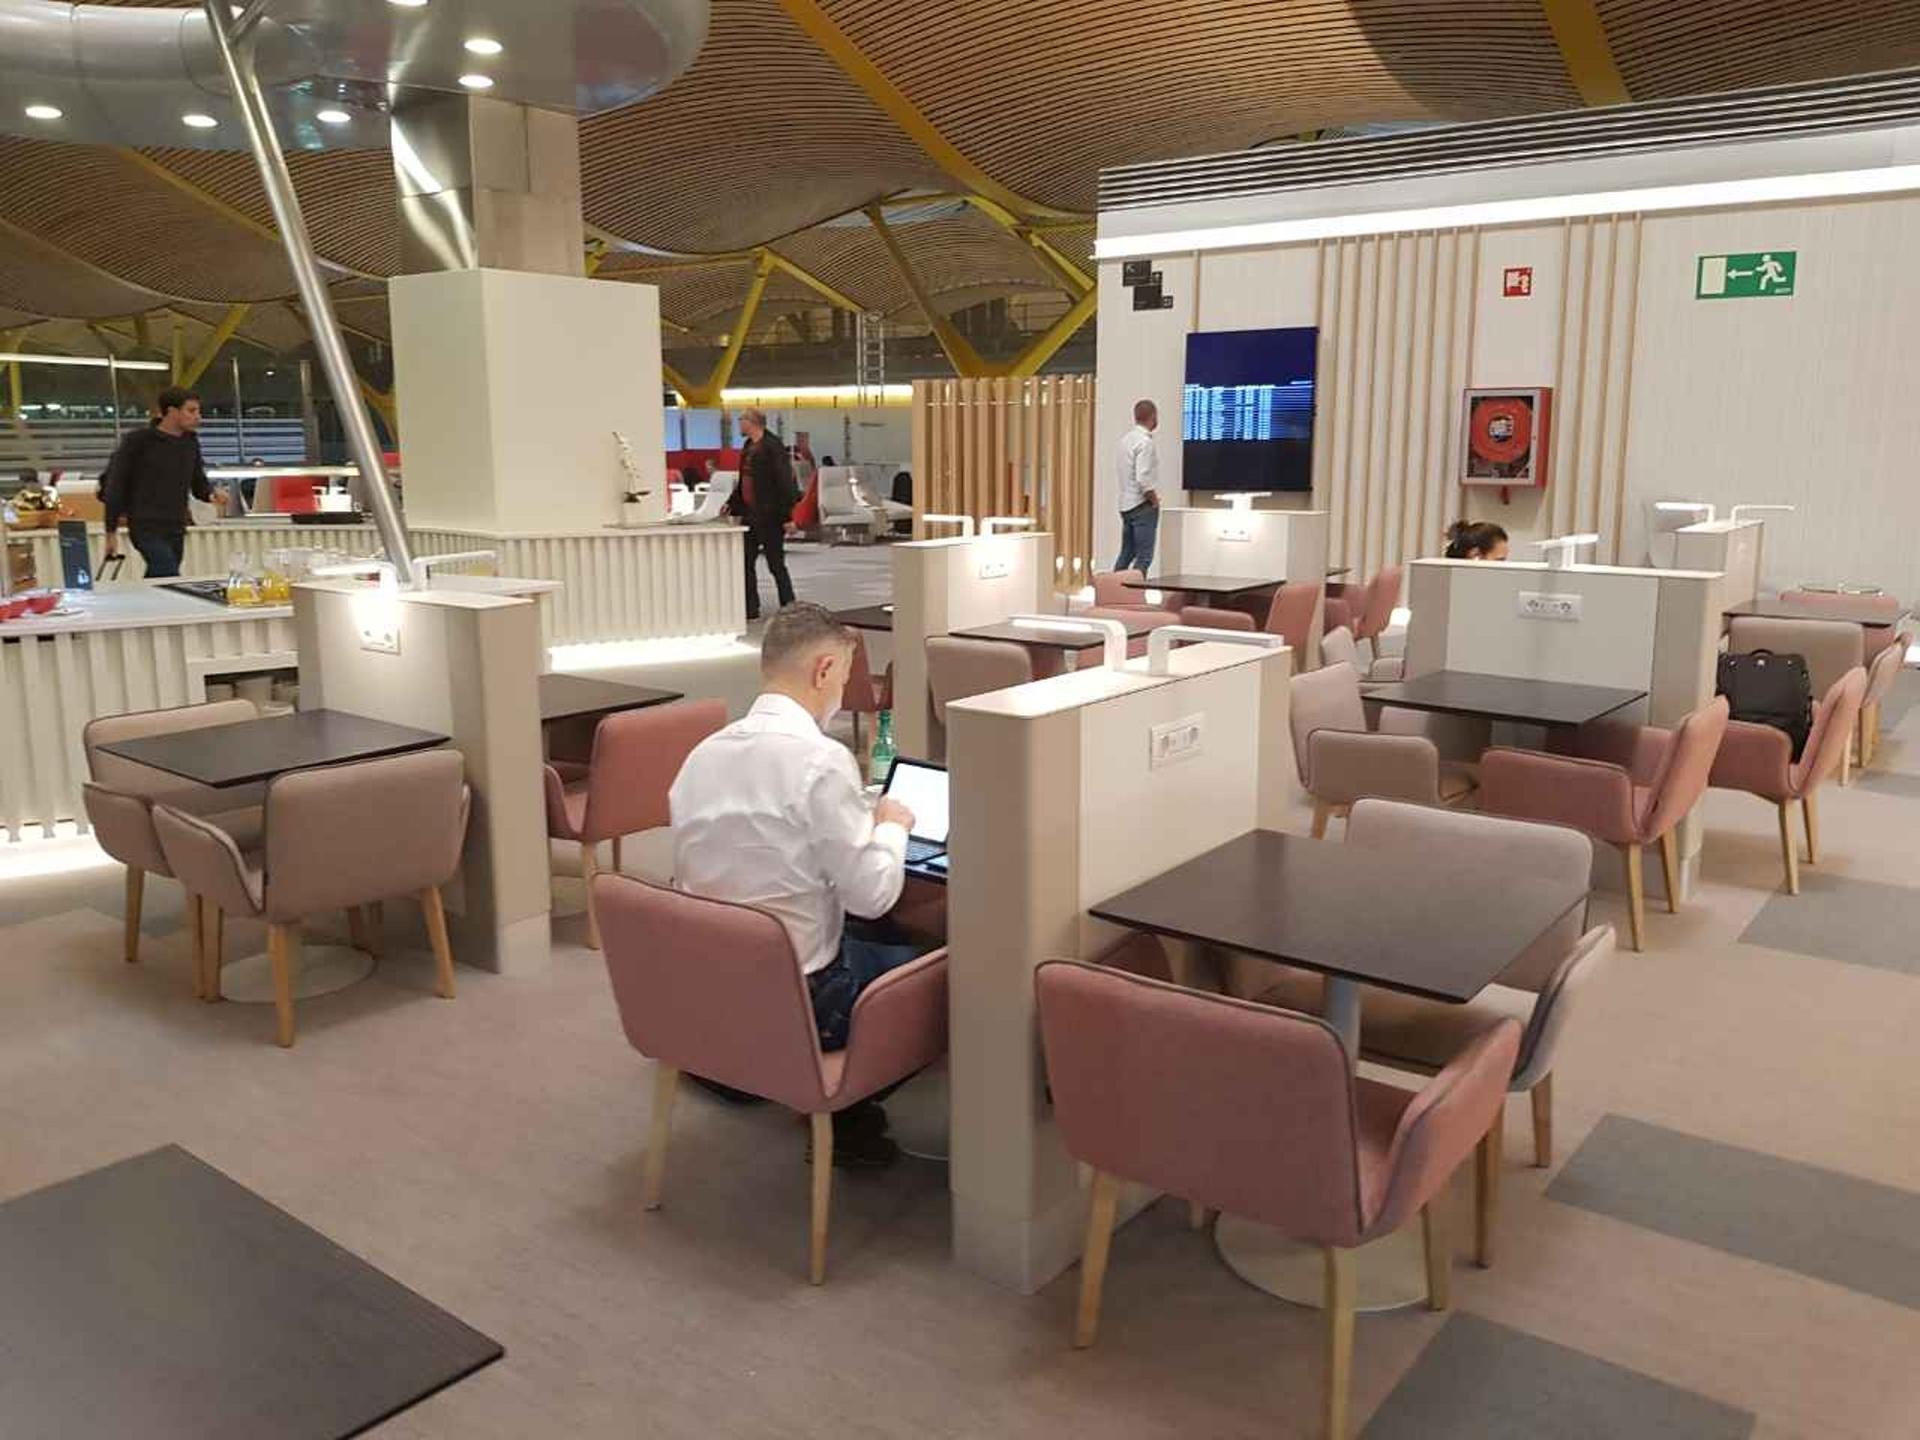 Iberia Dali Lounge image 3 of 27